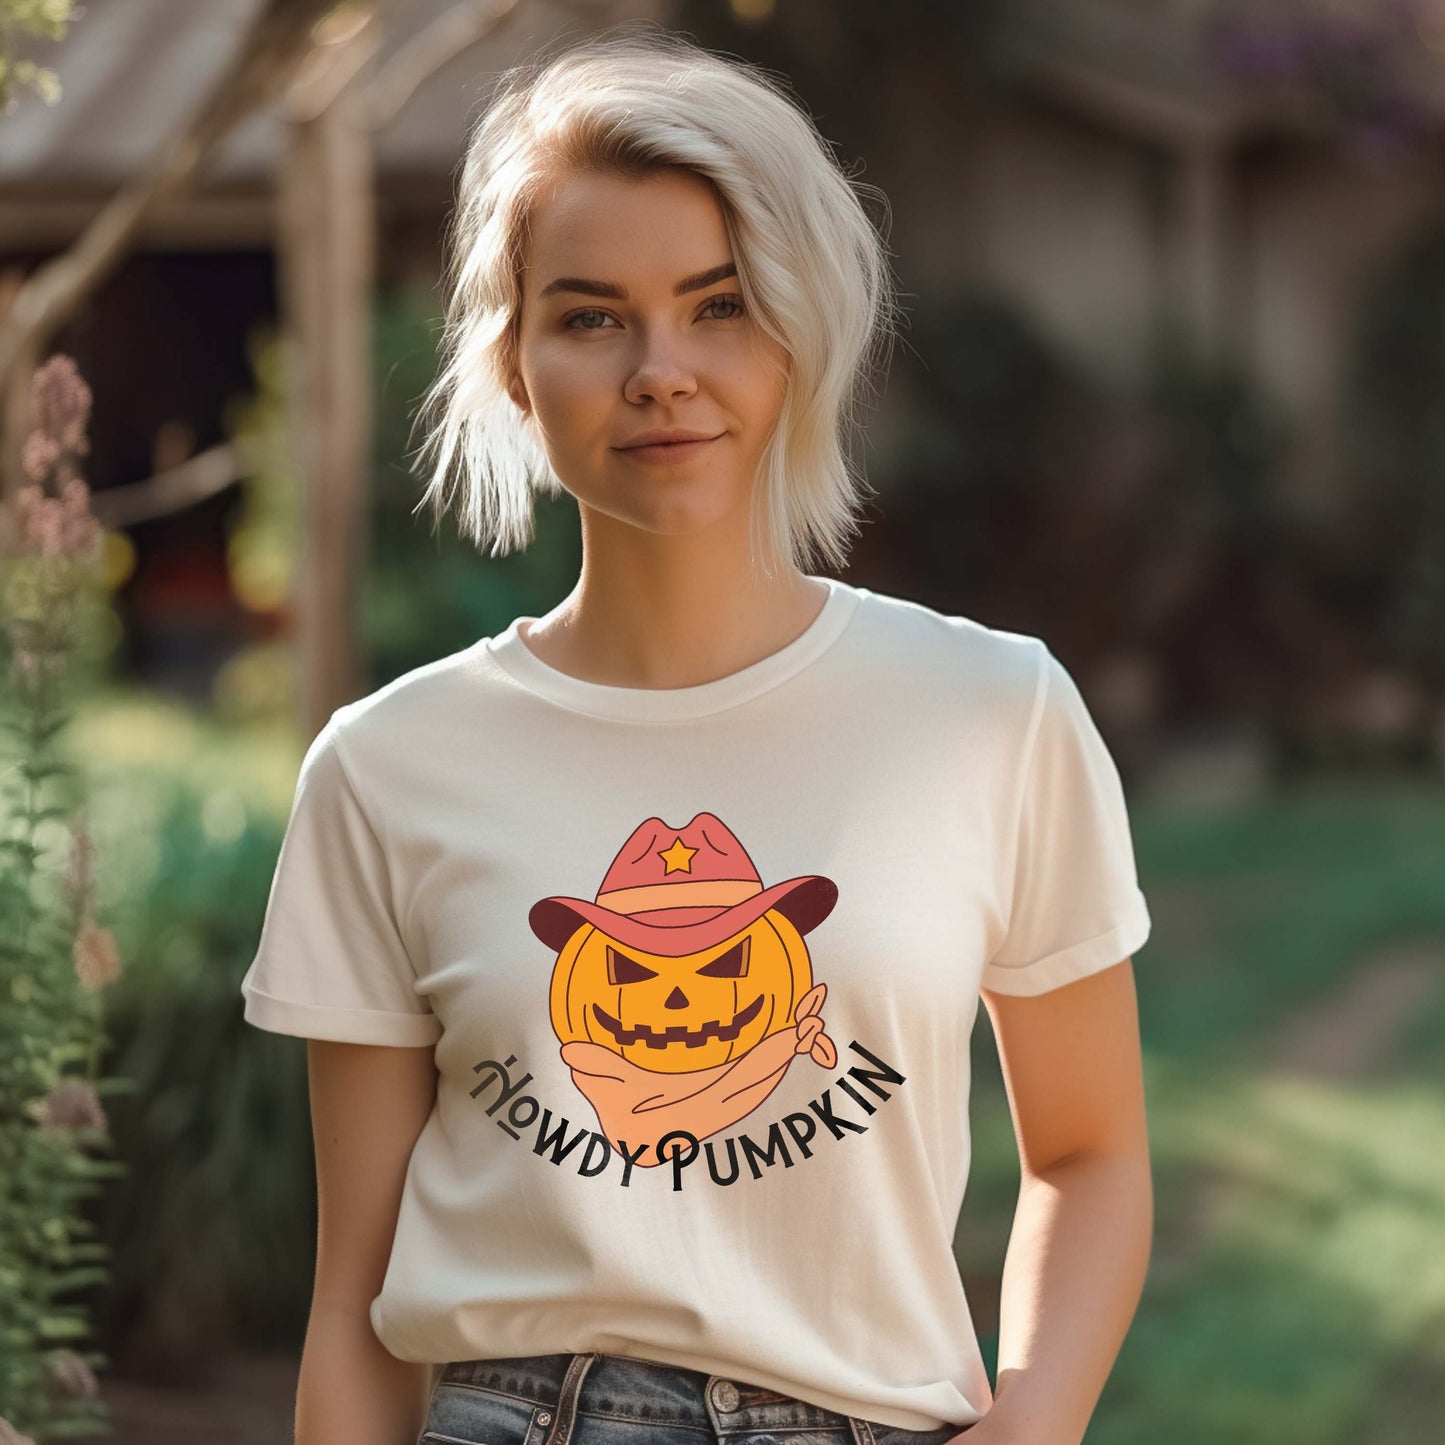 Howdy Pumpkin - Halloween Tee